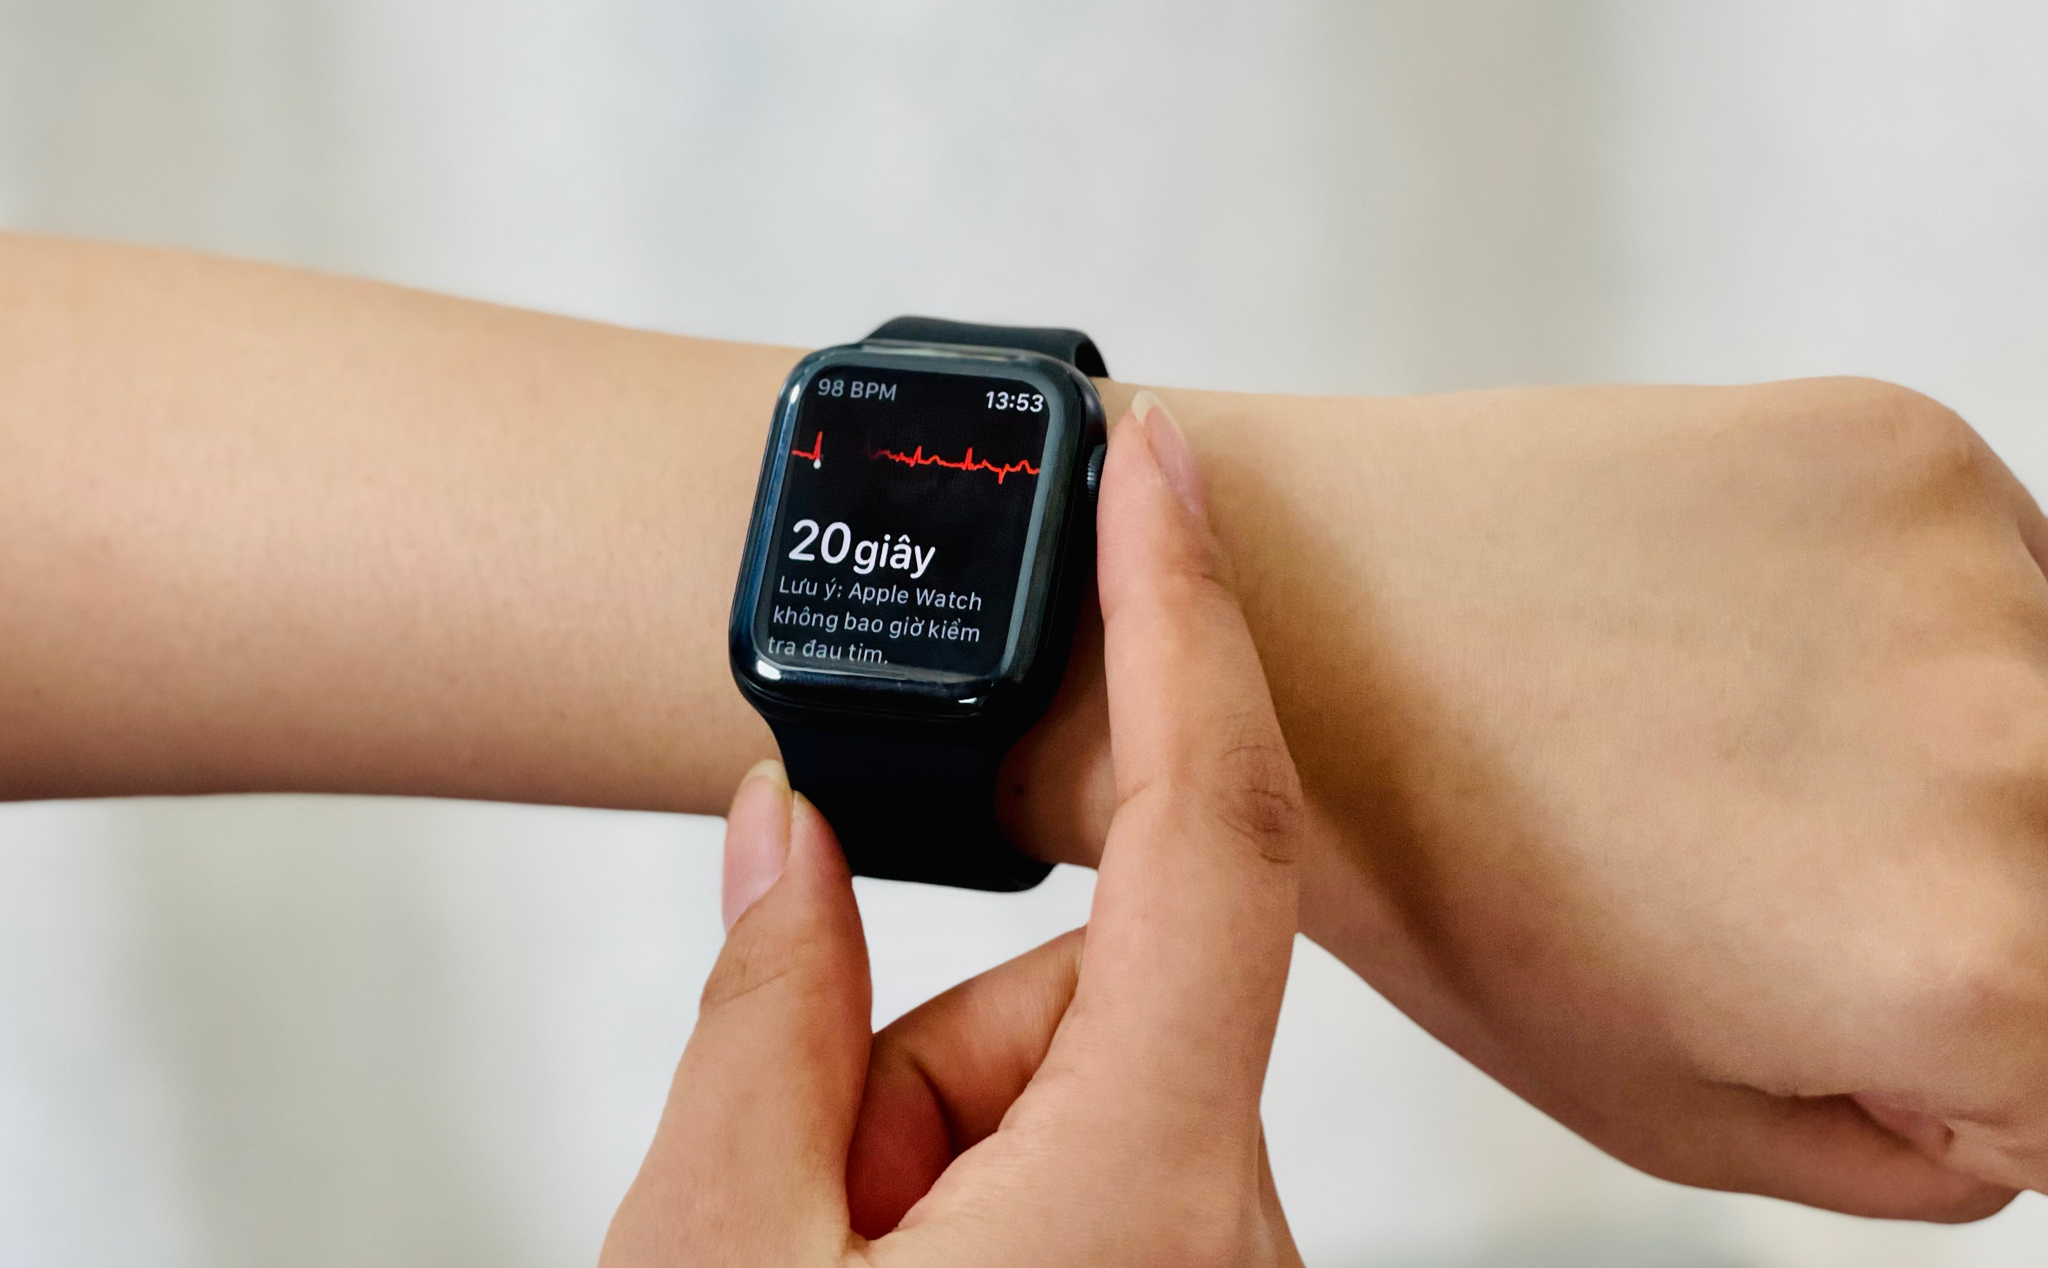 Nghiên cứu cho thấy người đeo Apple Watch hầu như chả hưởng lợi gì từ chức năng AFib cả